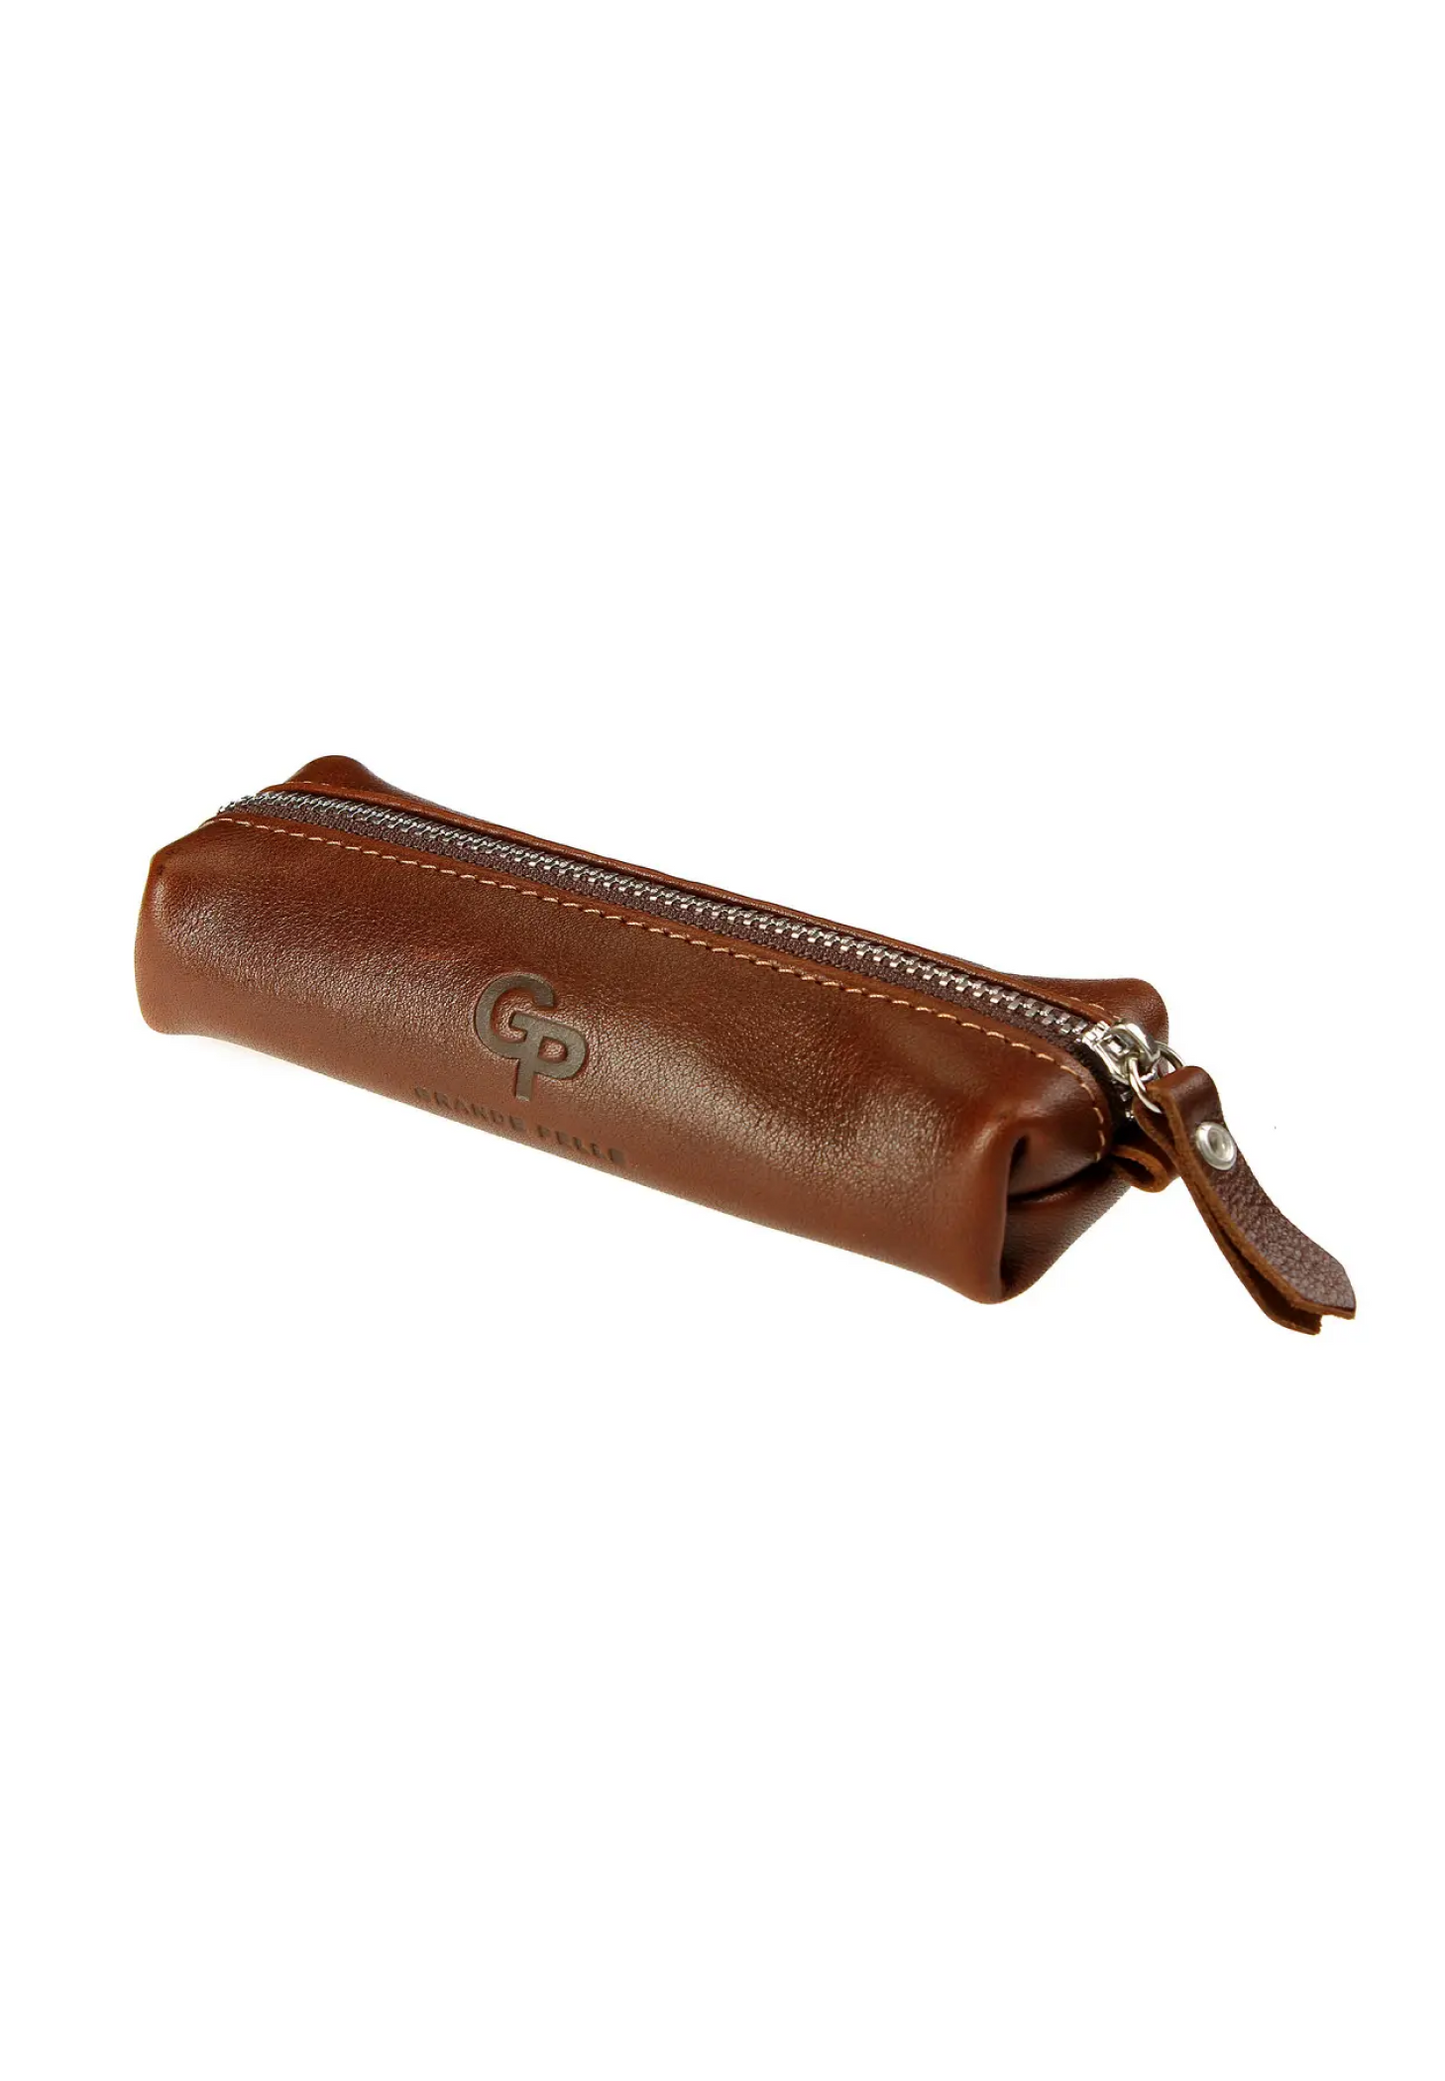 leather key holder case